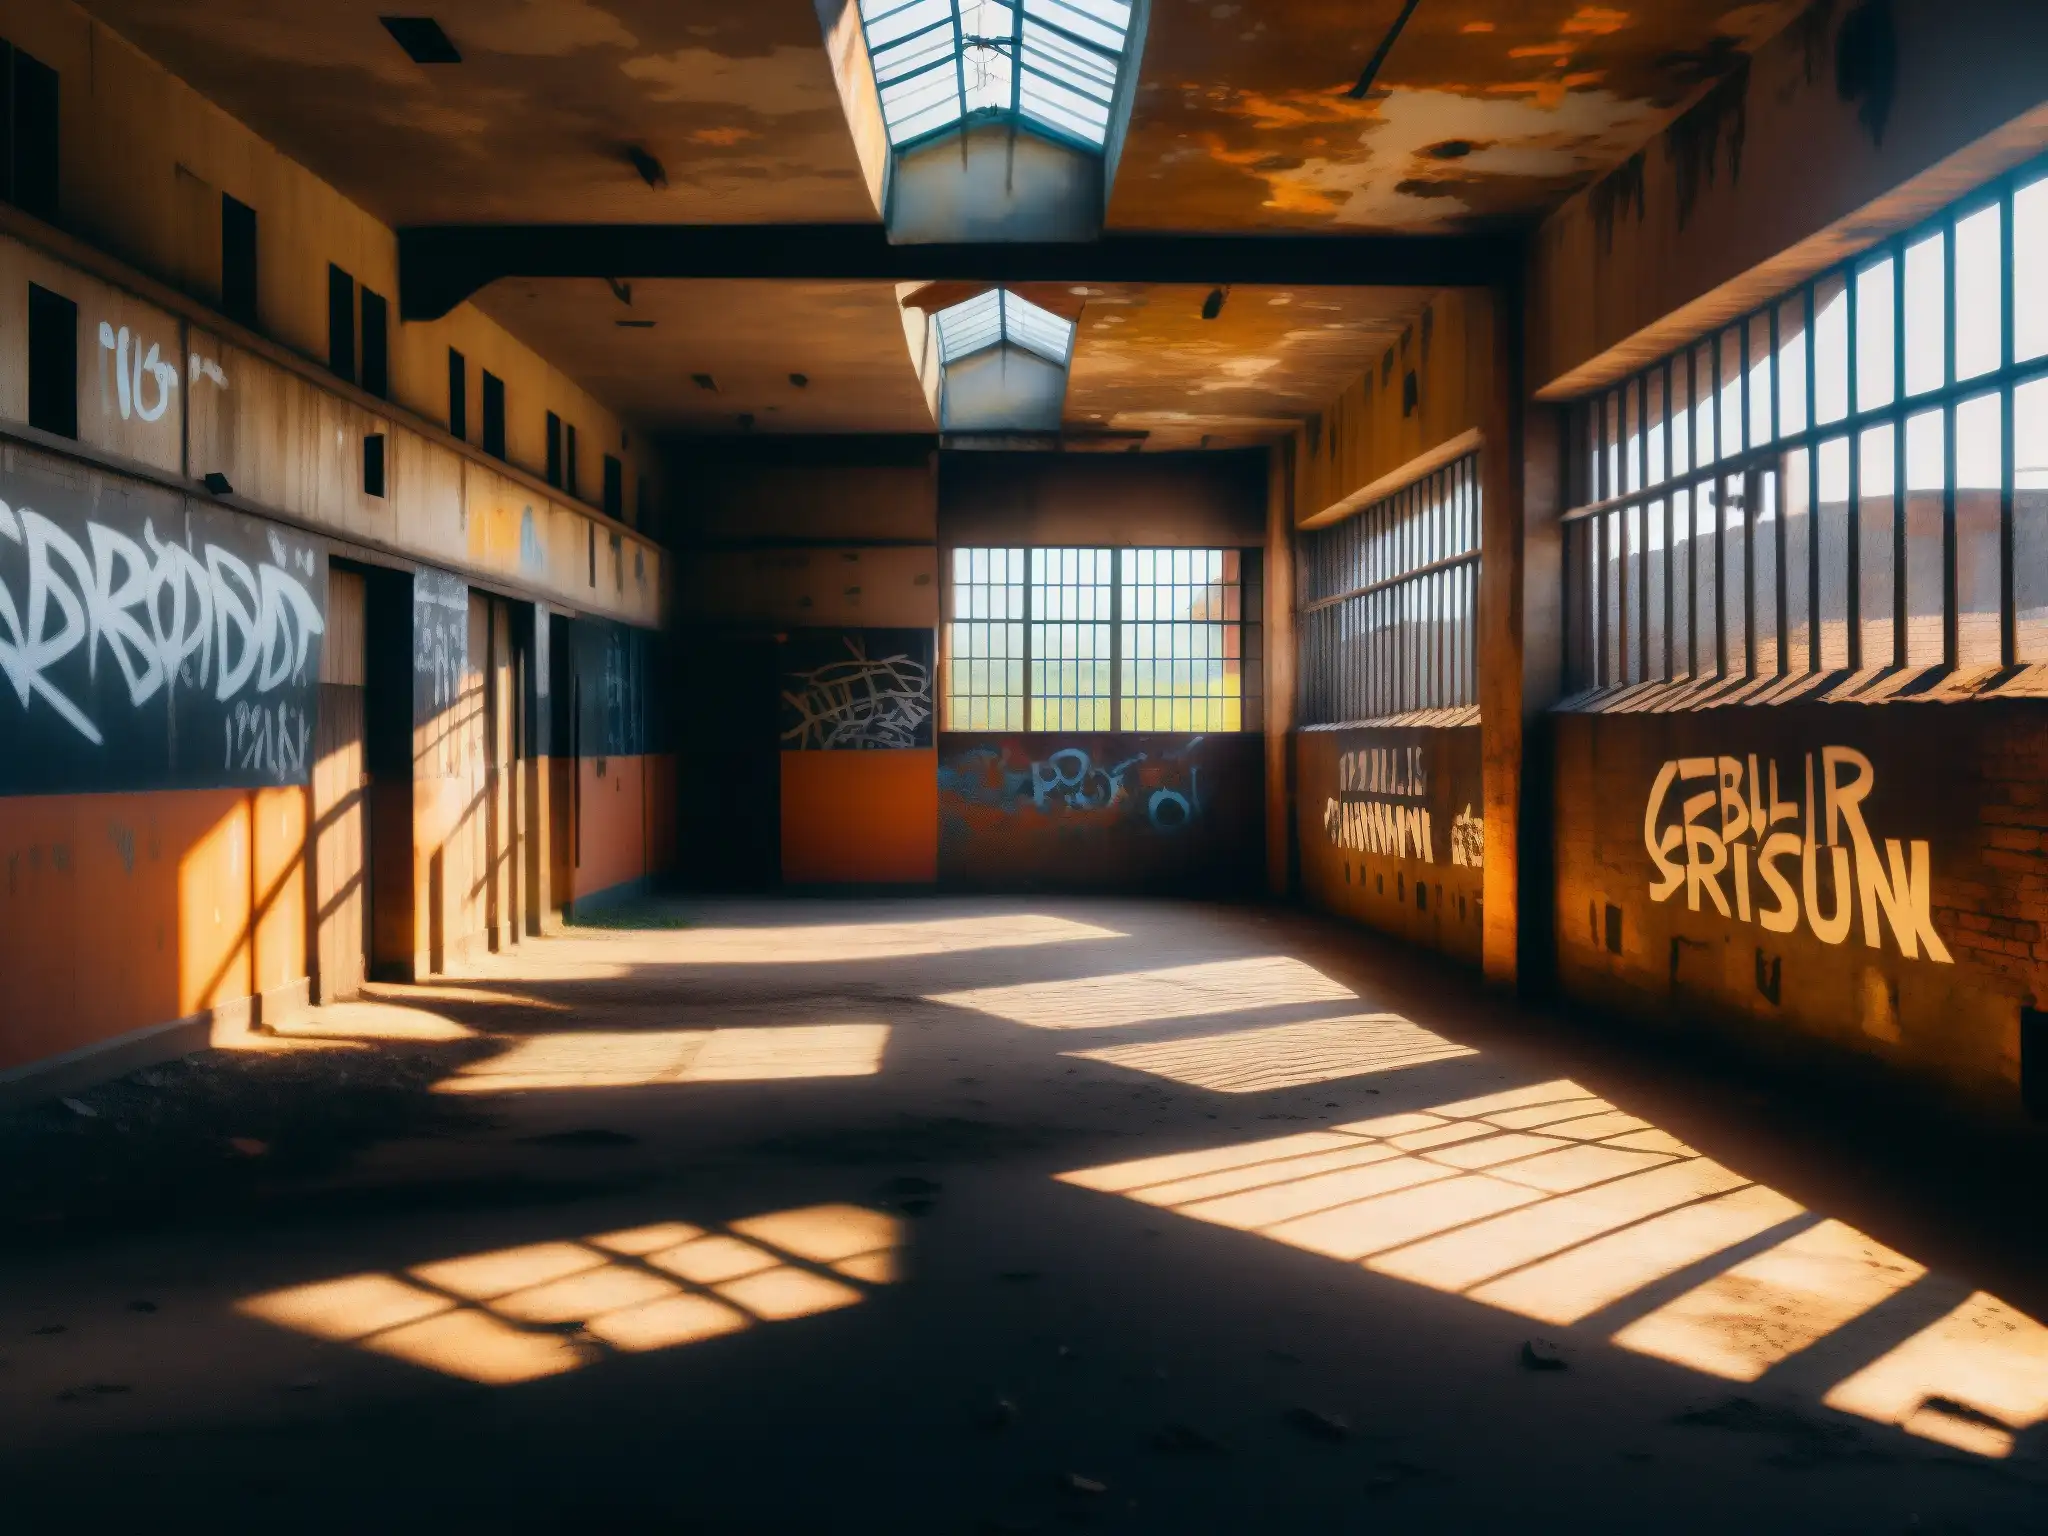 Imagen 8k de la prisión celular abandonada, muestra paredes en ruinas con graffiti, rayos de luz y sombras, evocando misterio y leyendas urbanas